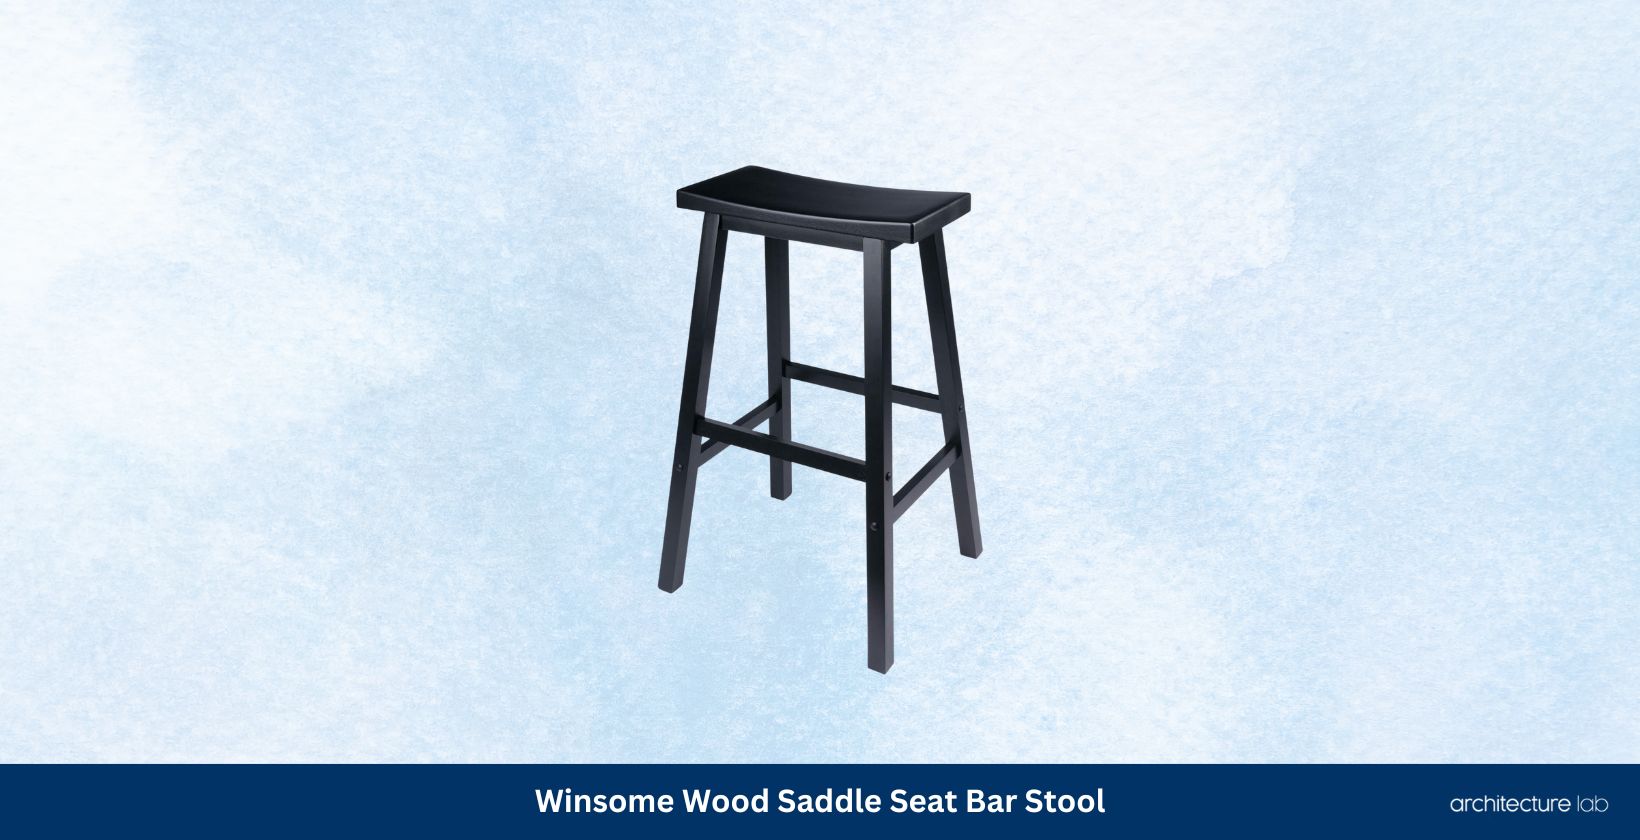 Winsome wood saddle seat bar stool